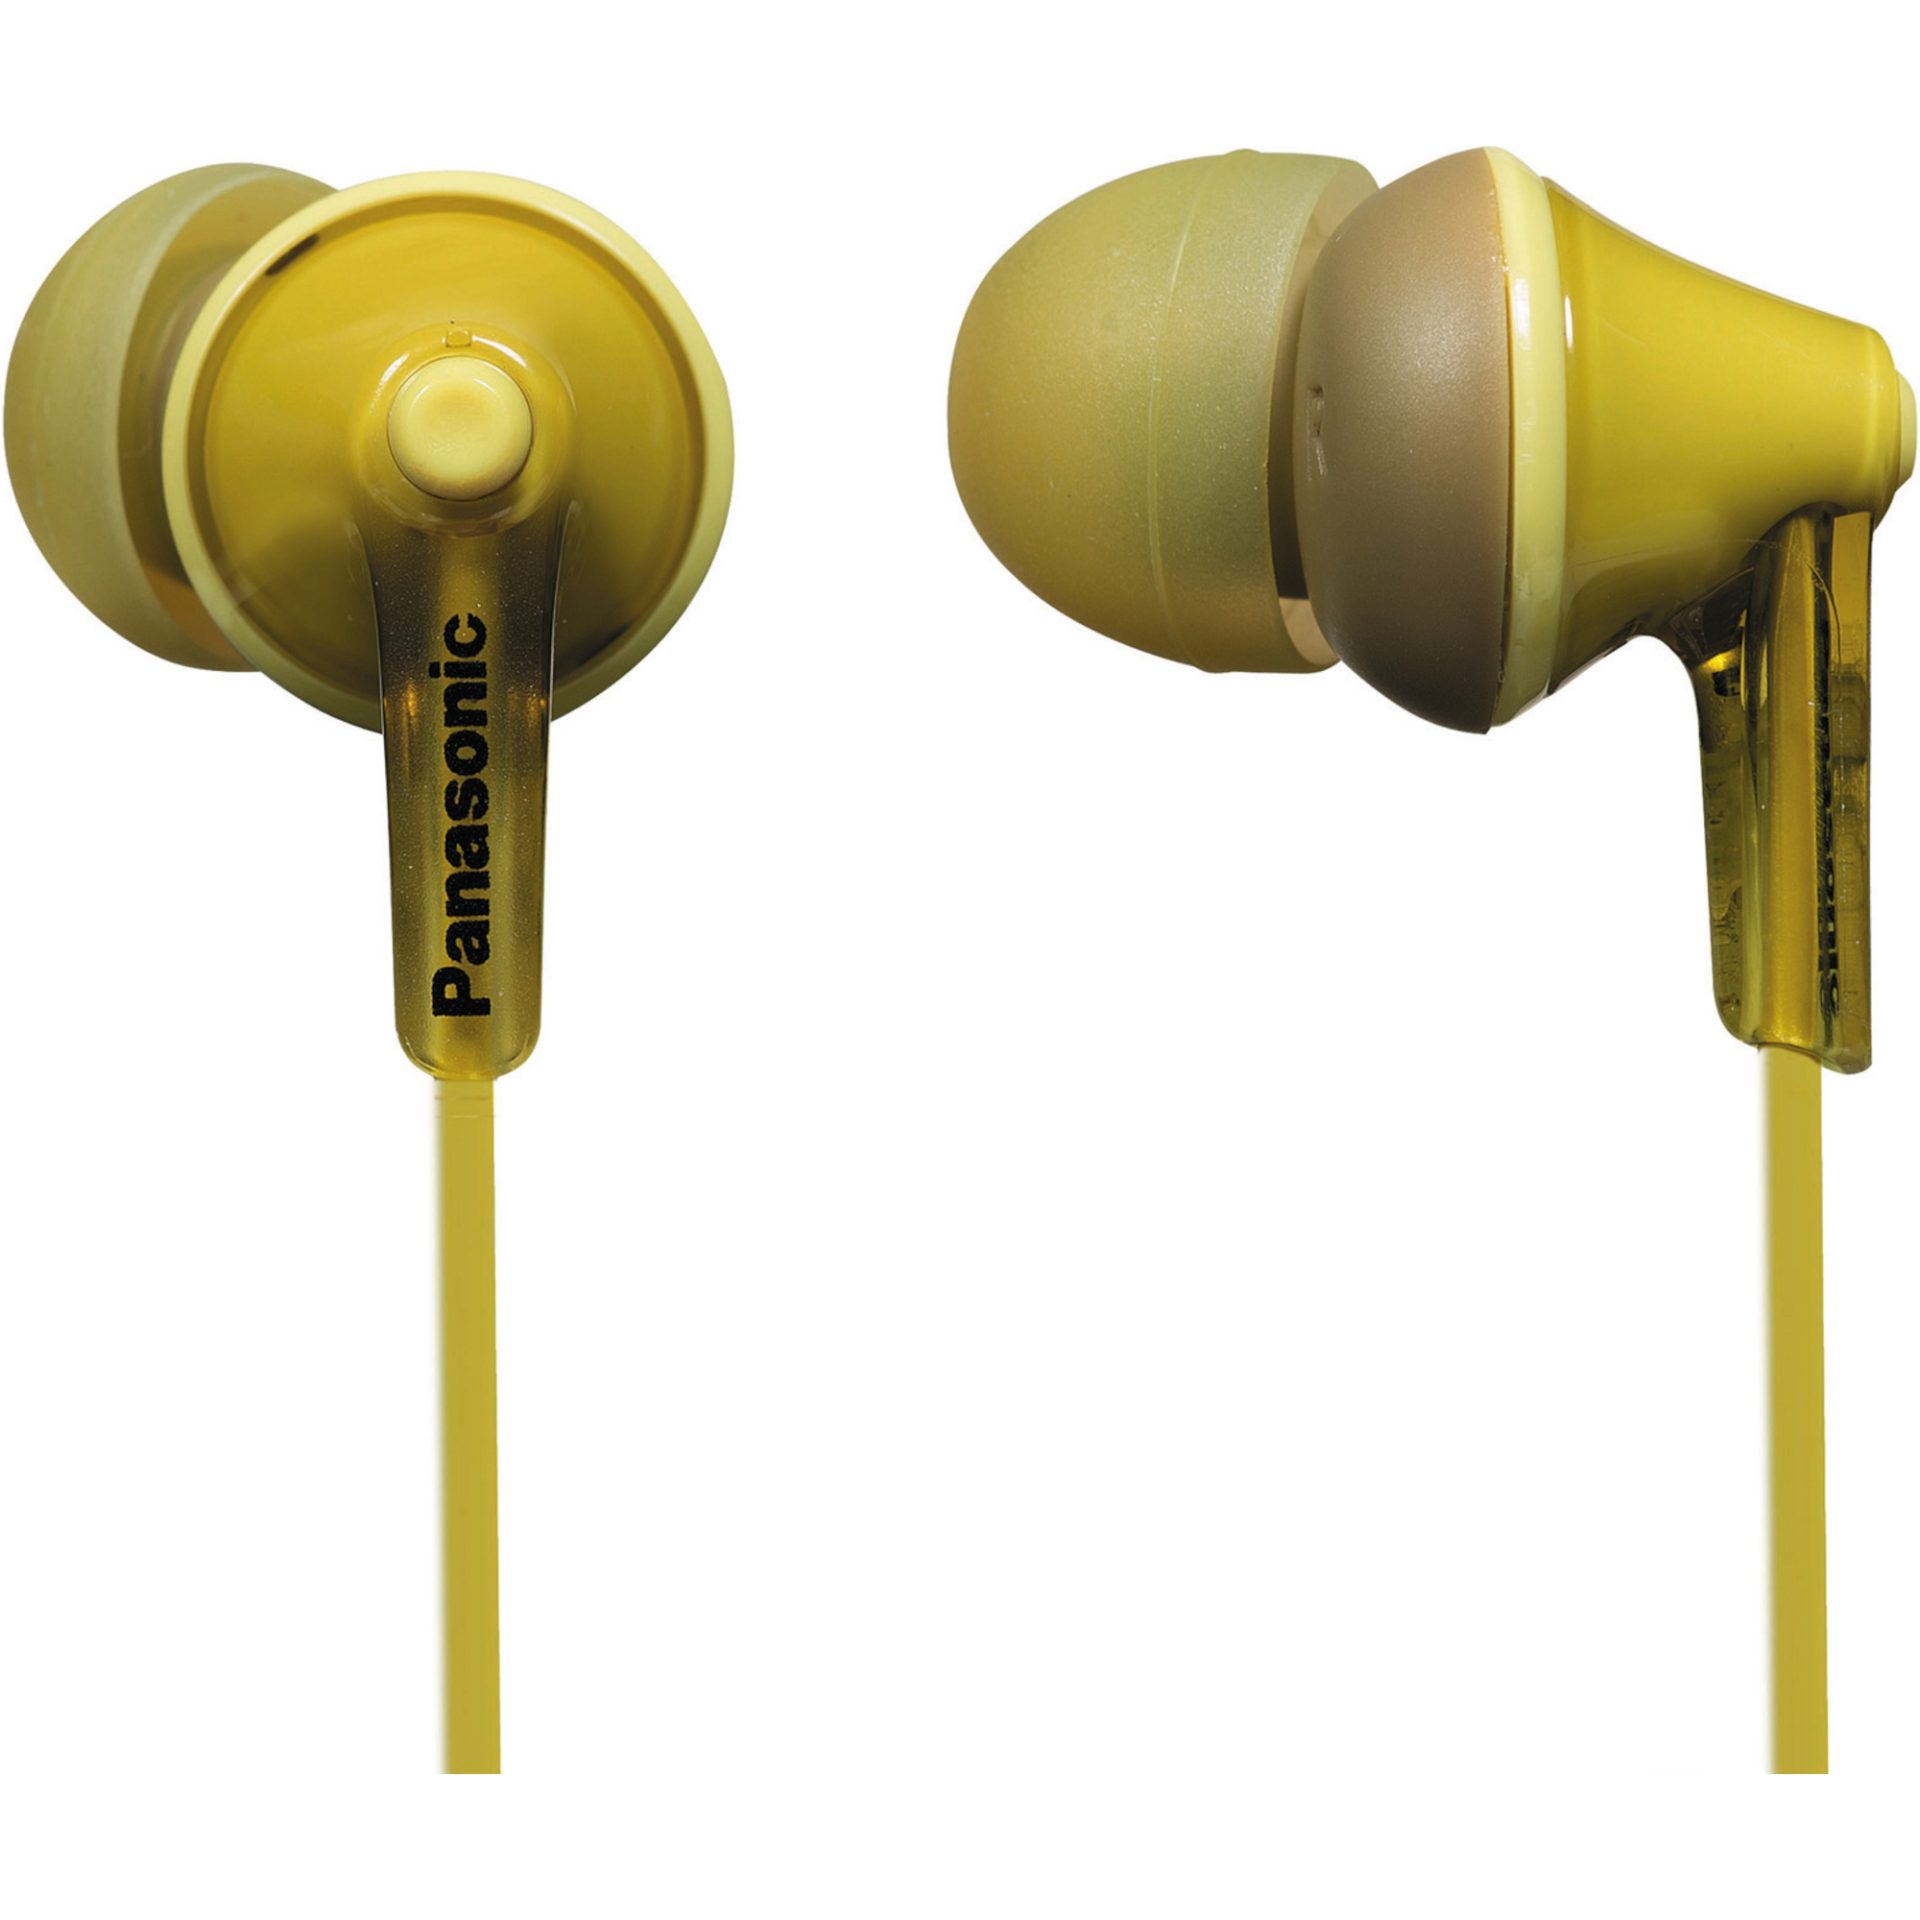 Panasonic RP-HJE125 kabelová sluchátka do uší (9mm měniče, design ErgoFit, 3 páry měkkých sluchátek, kabel délky 1,1m), žlutá